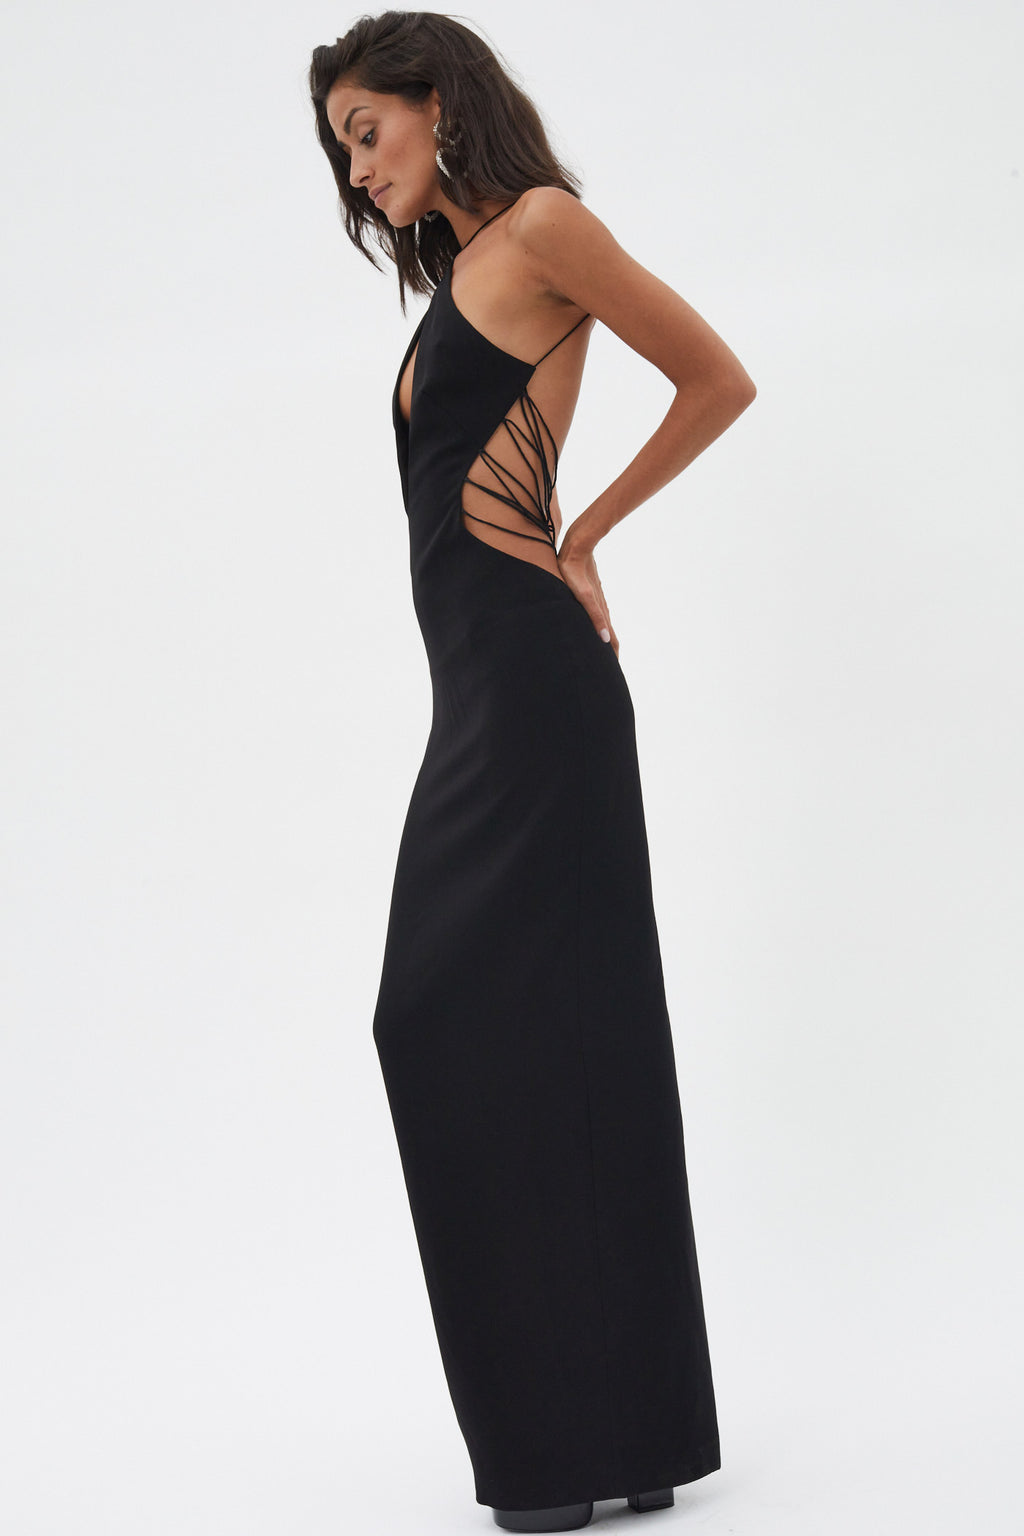 Halter Black Dress with Lacing Back Detail